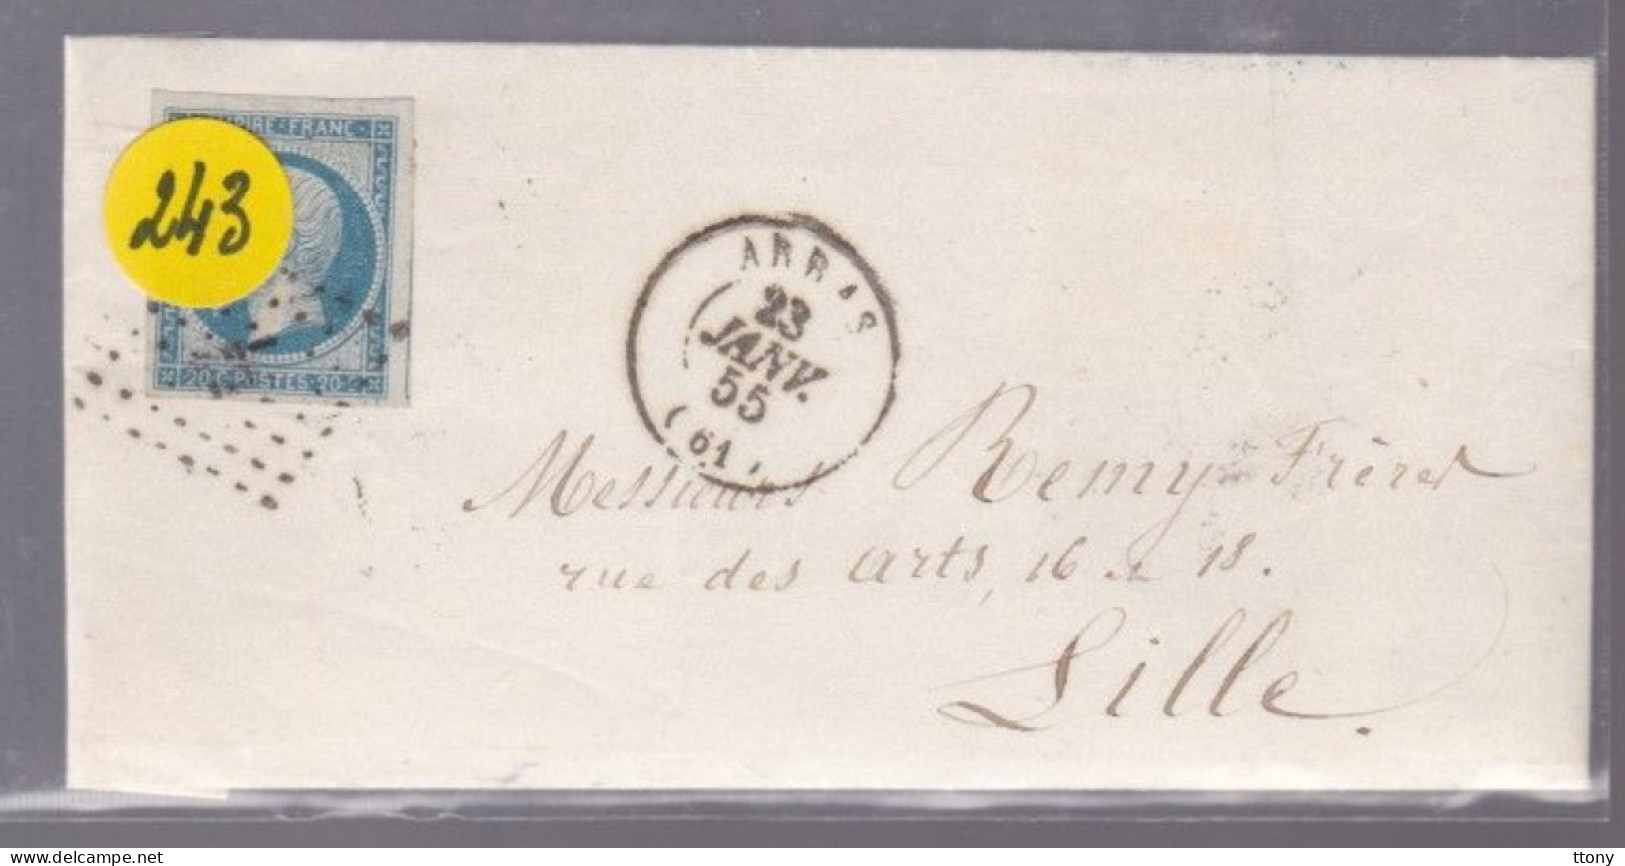 Un Timbre Napoléon III   N° 14  20 C Bleu   Arras 1855   Destination Lille - 1853-1860 Napoleone III